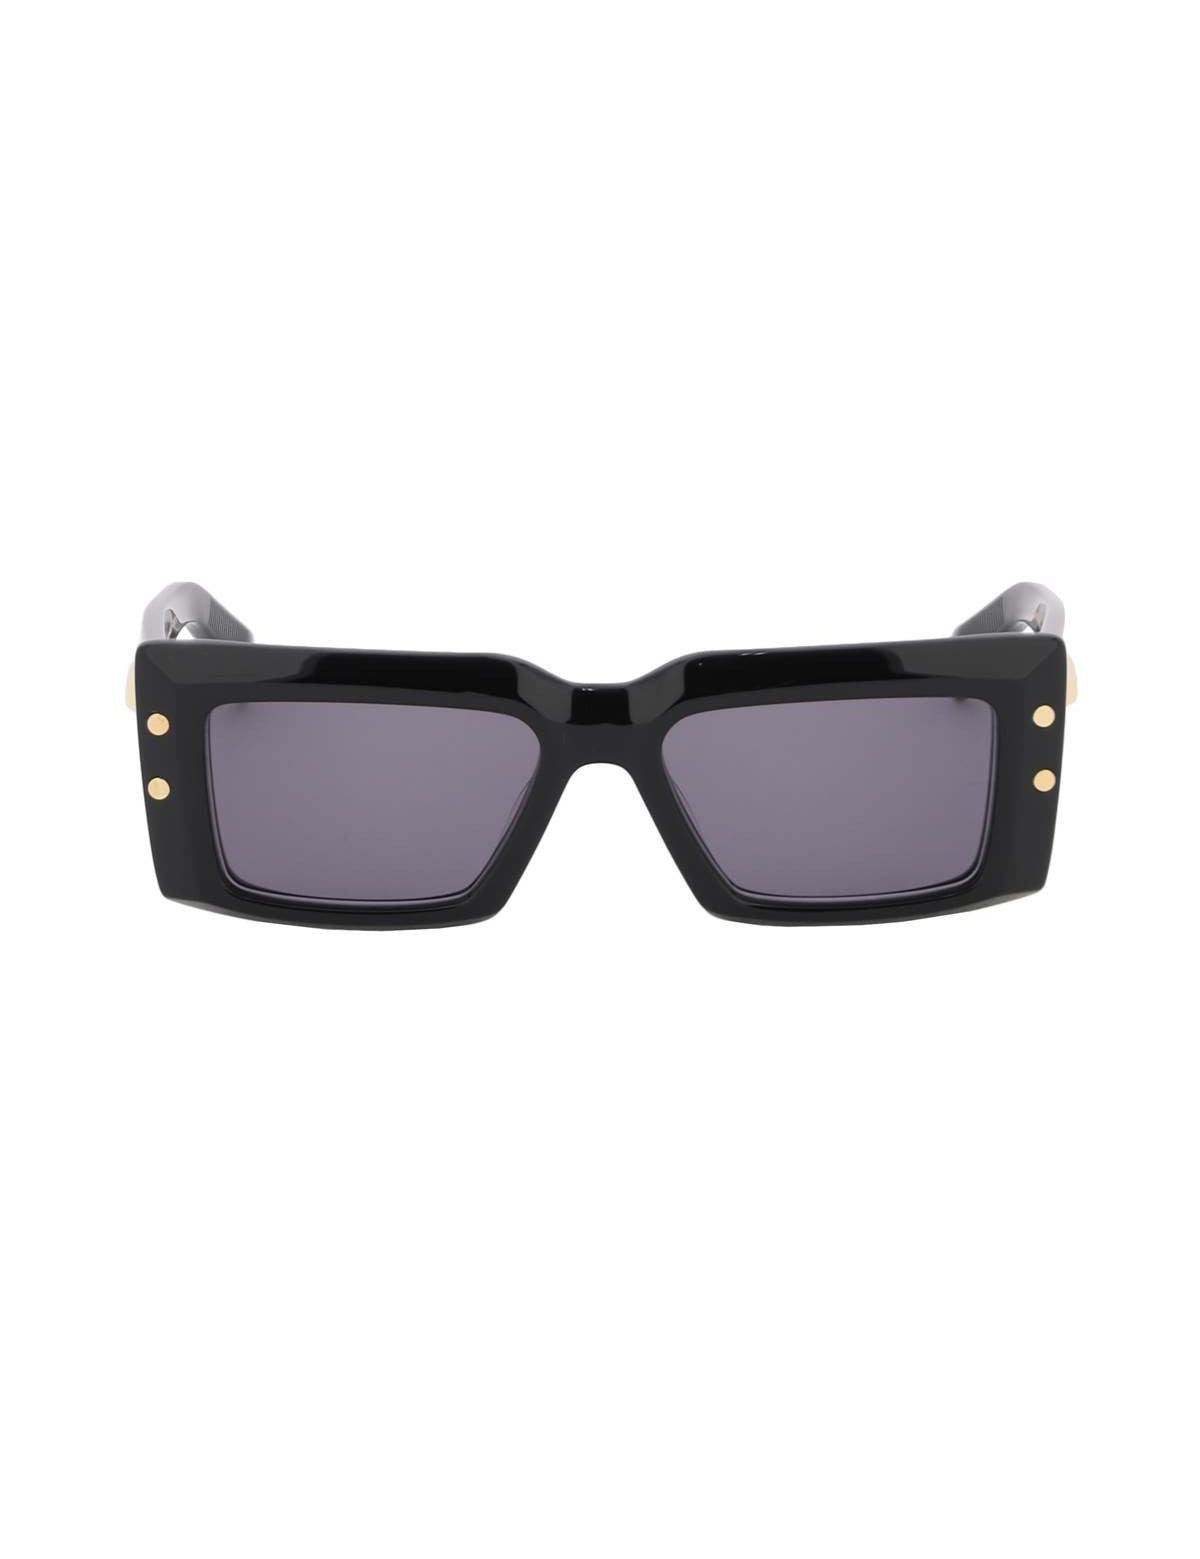 balmain-imperial-sunglasses.jpg